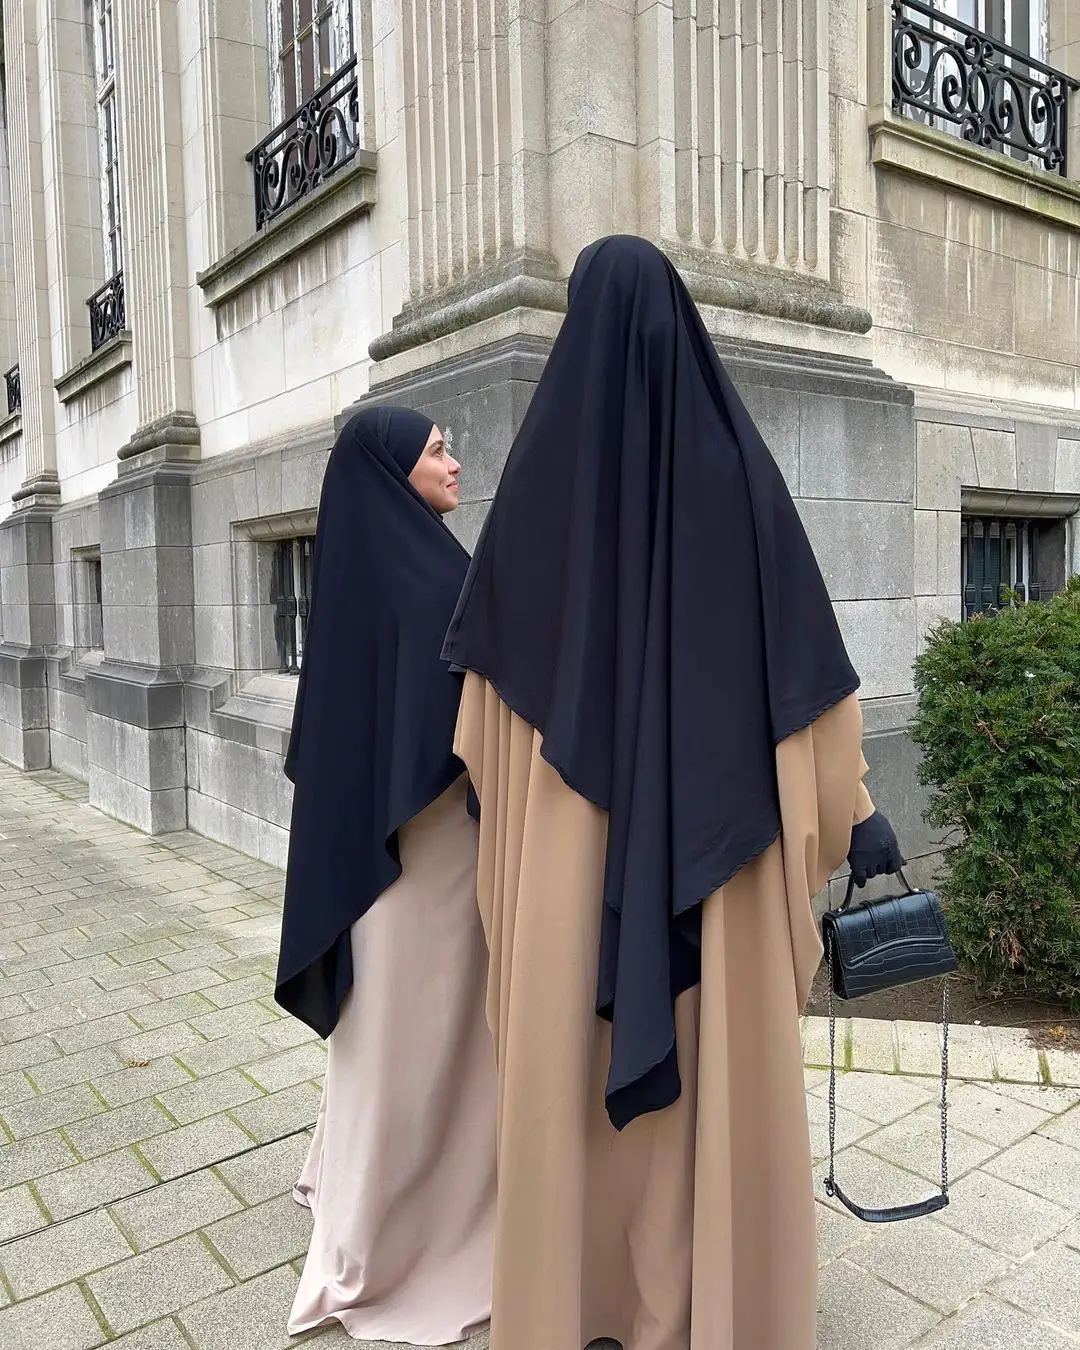 Großhandel türkischen Hijab Khimar schwarzen Hijab Dubai Schal Nahost islamischen muslimischen Hijab Schal aus der Türkei Frauen Gebets schal